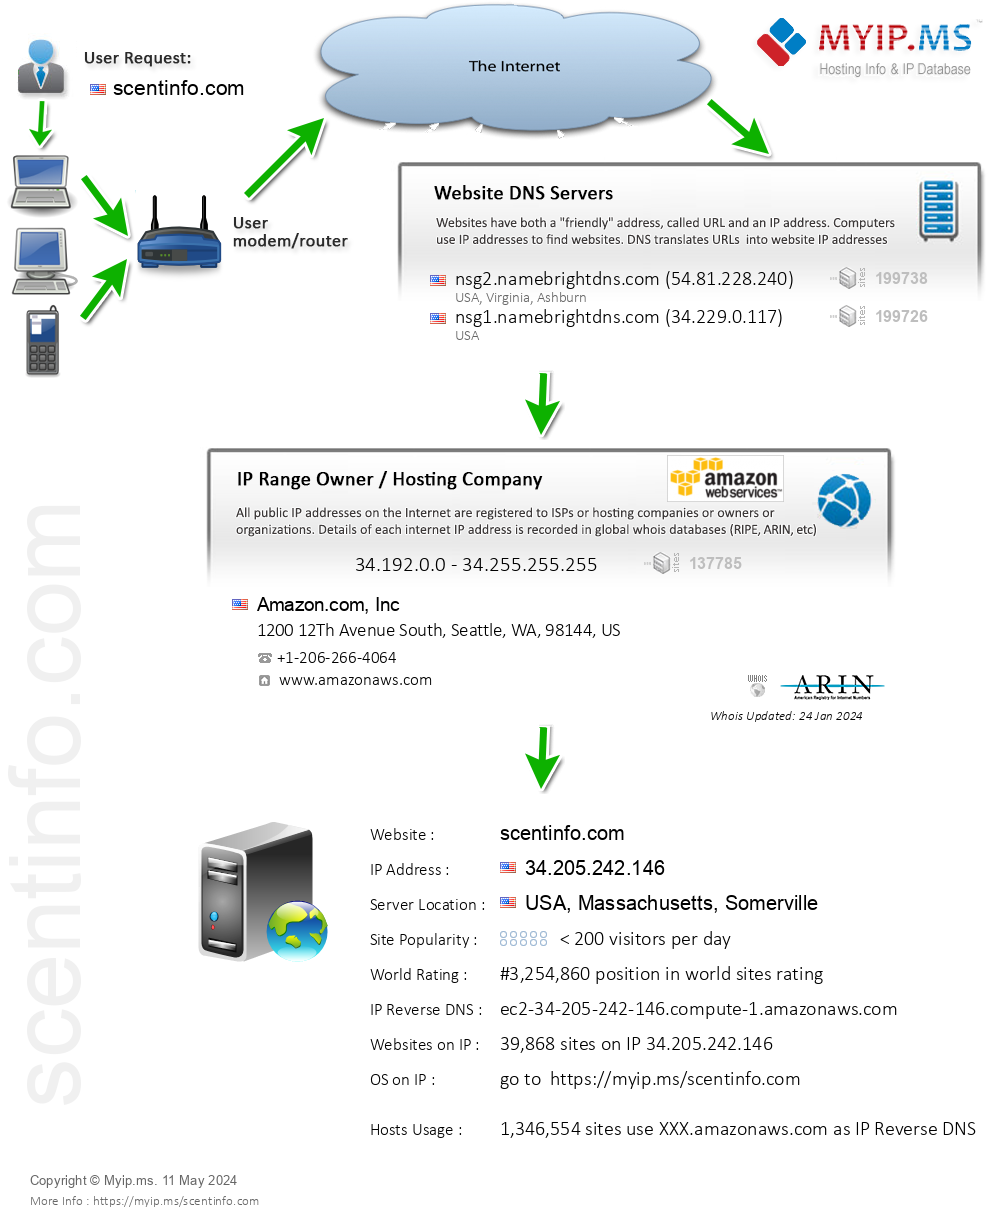 Scentinfo.com - Website Hosting Visual IP Diagram